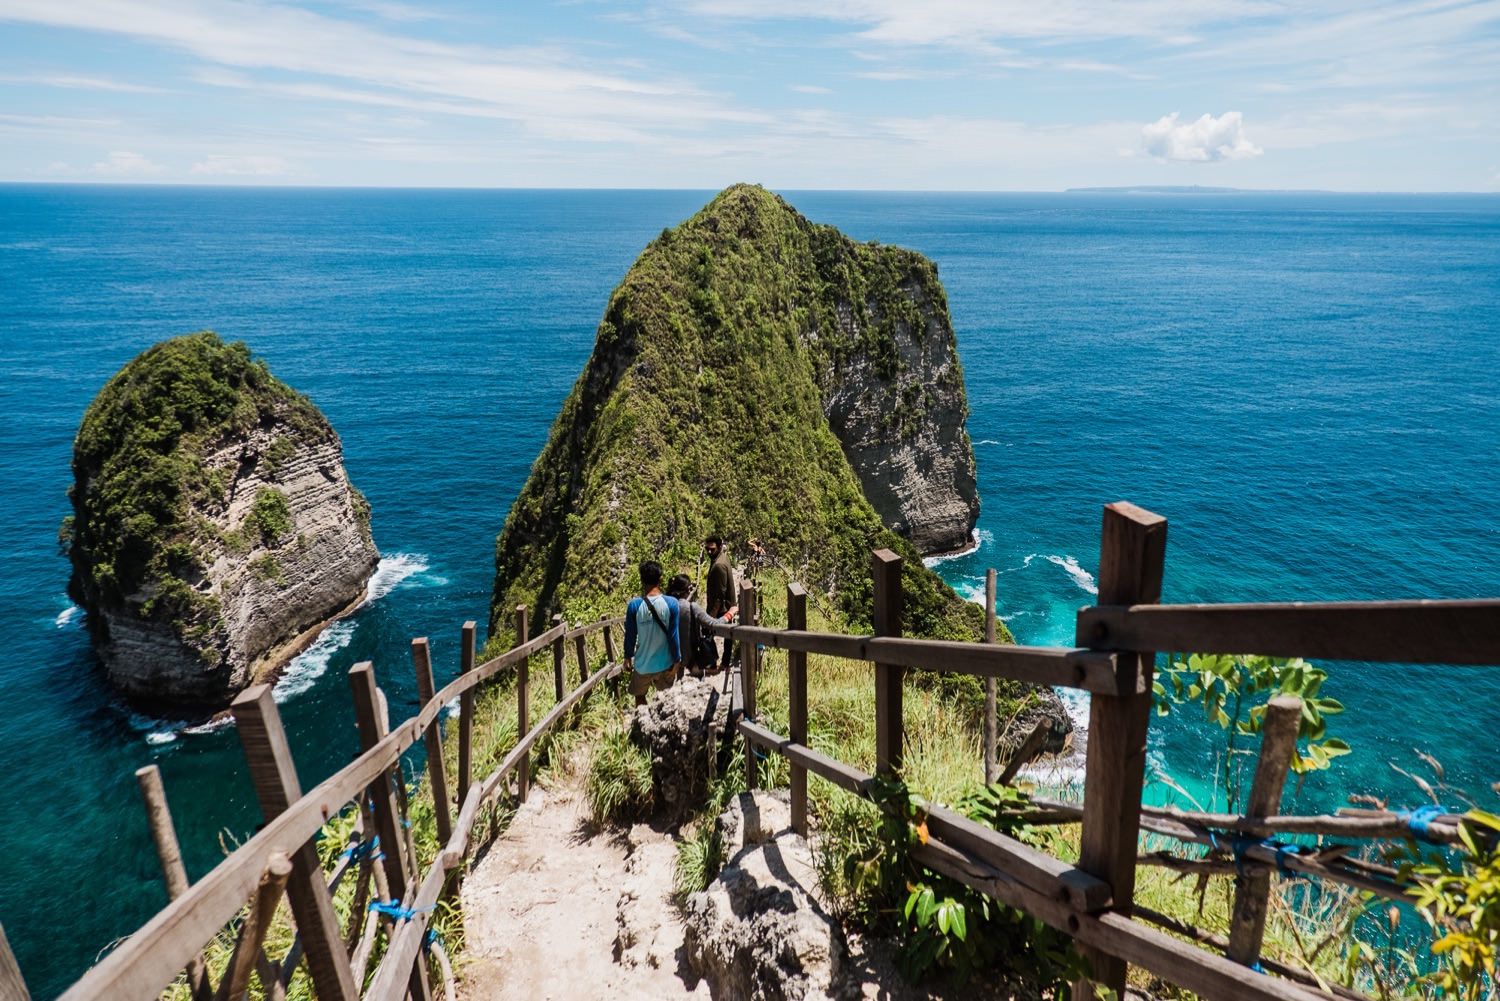 Route für backpacking auf Bali